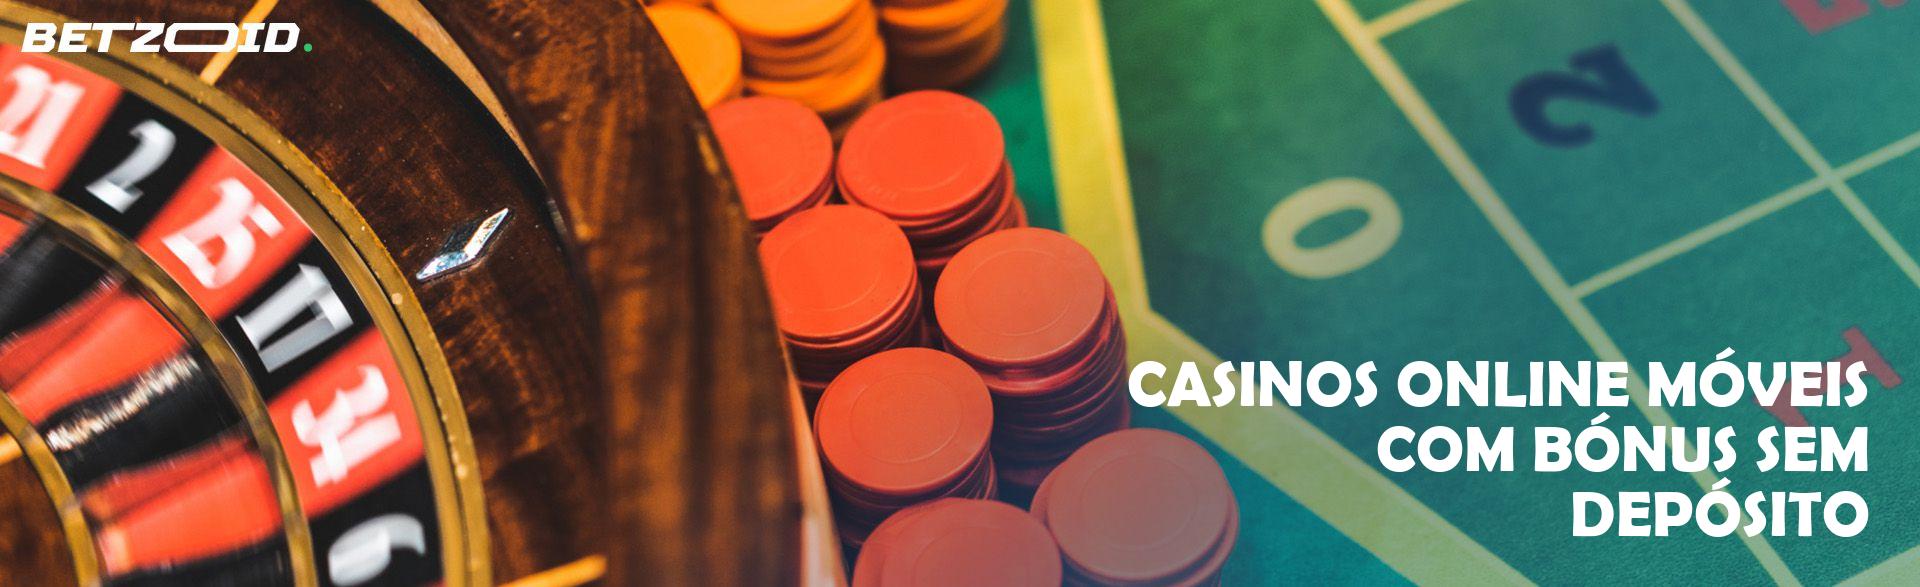 Casinos Online Móveis com Bónus Sem Depósito.